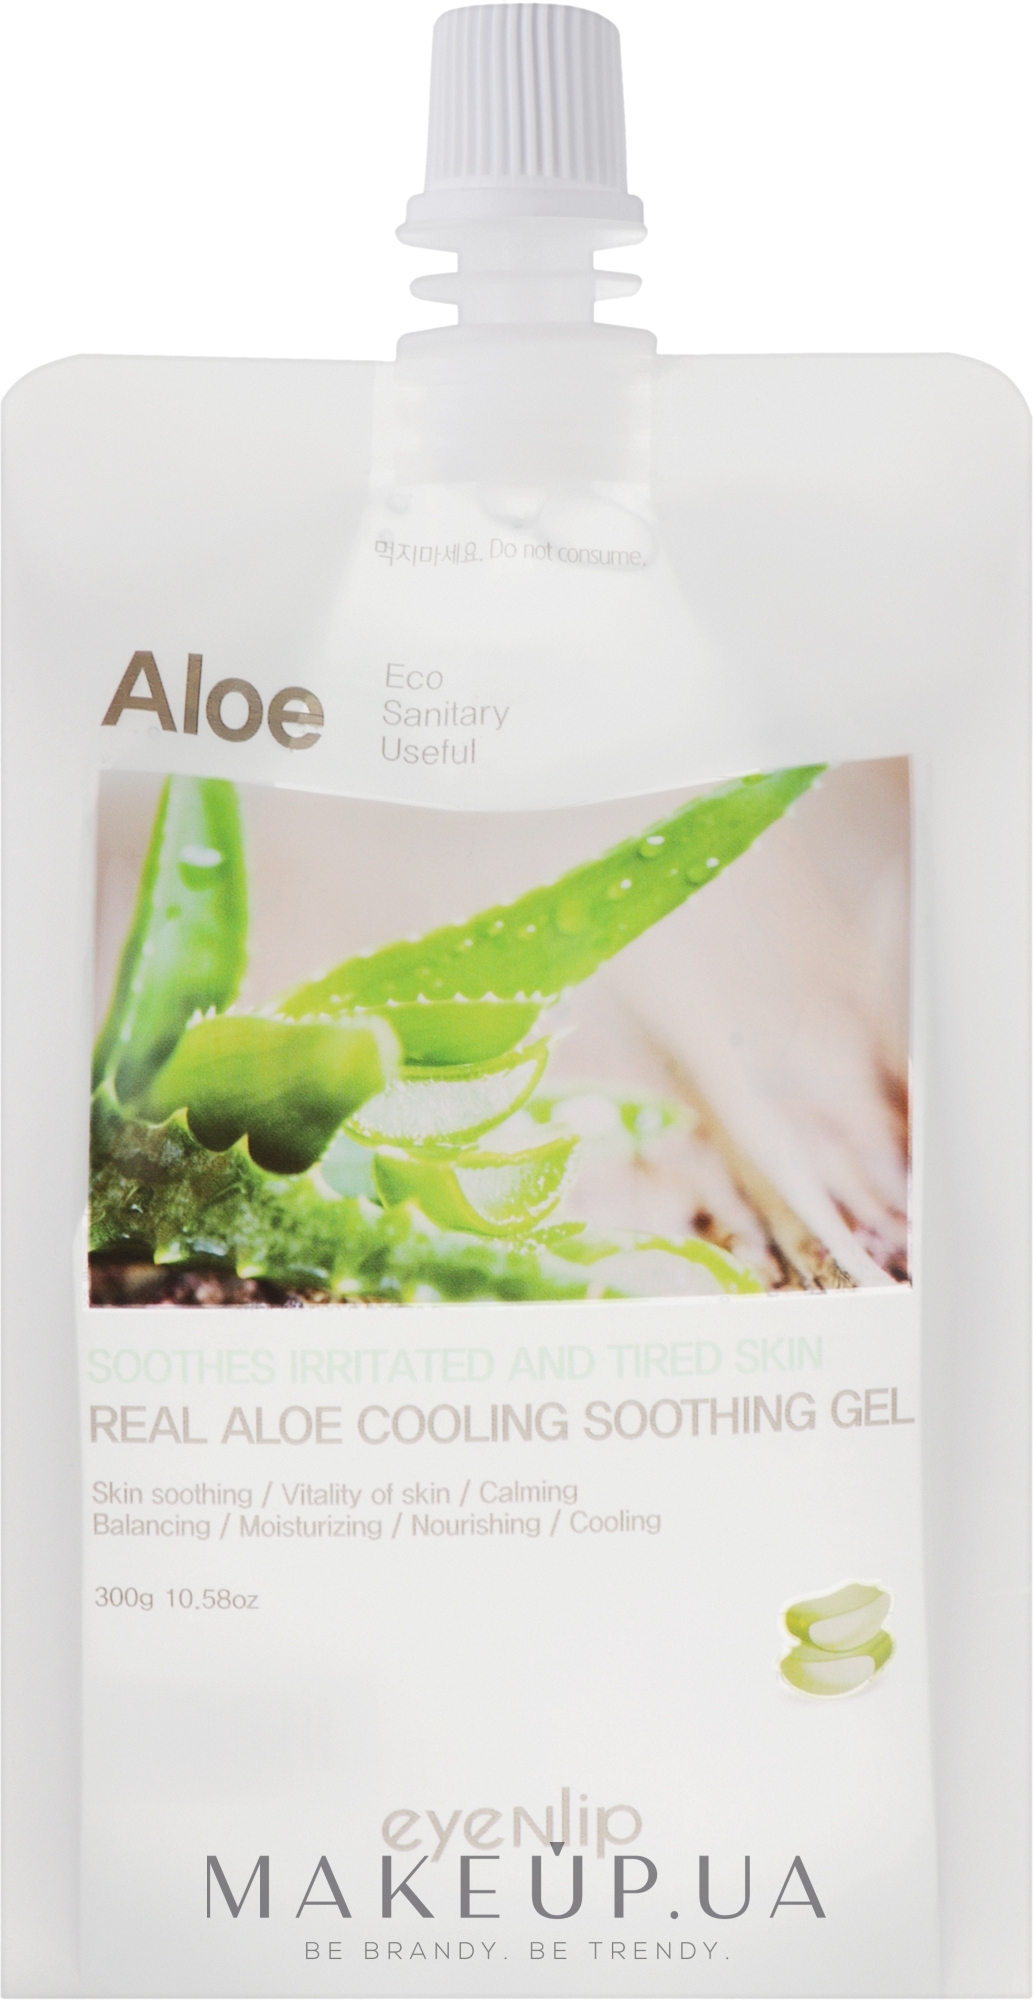 Охолоджувальний і заспокійливий гель для обличчя й тіла - Eyenlip Real Aloe Cooling Soothing Gel — фото 300g